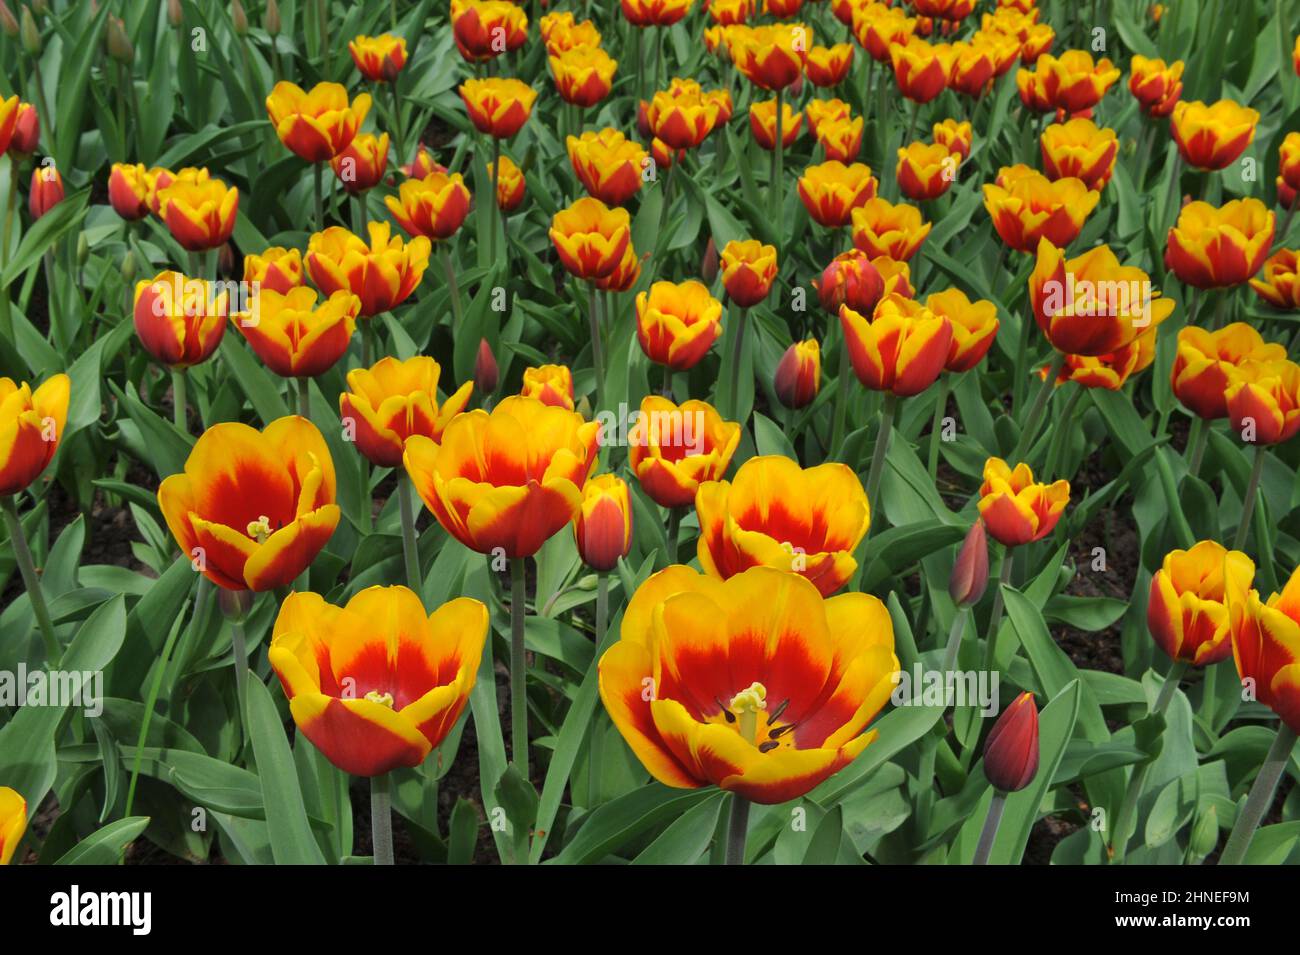 Rote und gelbe Triumph Tulpen (Tulipa) Kees Nelis blühen im April in einem Garten Stockfoto